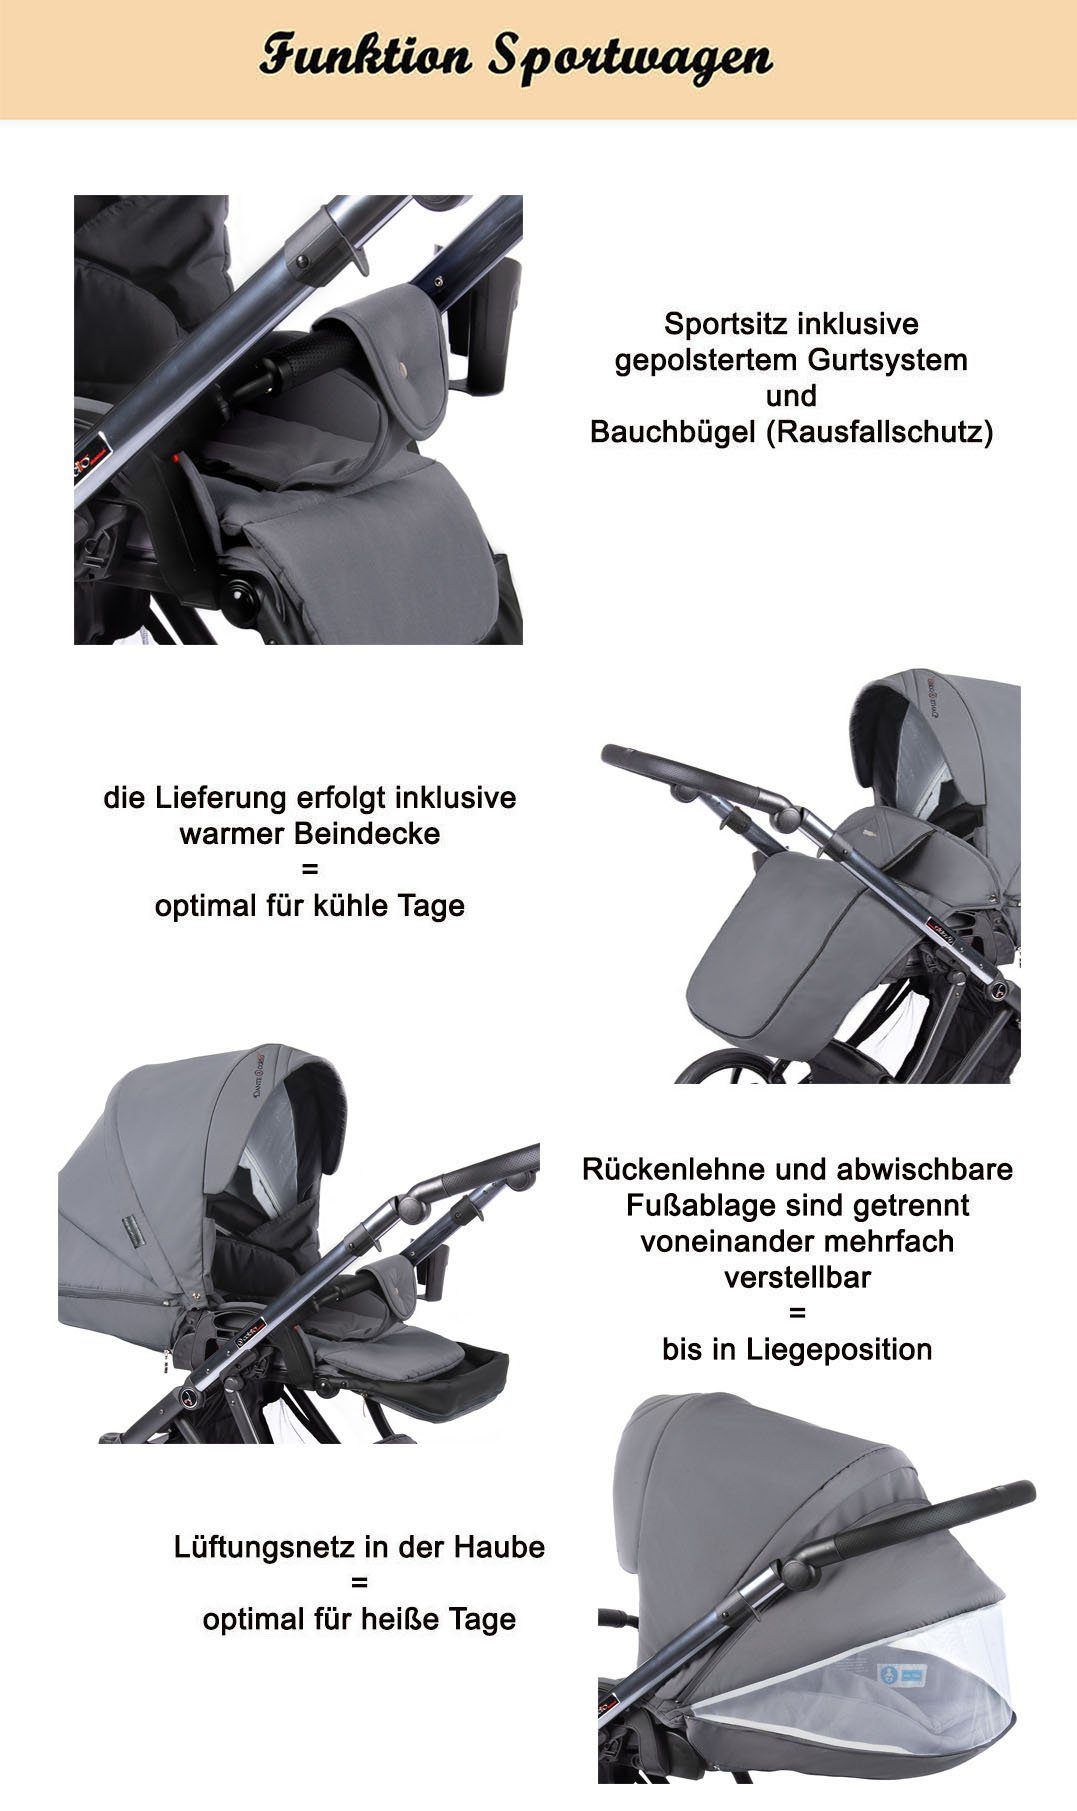 babies-on-wheels Kombi-Kinderwagen kupfer 11 Gestell Teile in - Kinderwagen-Set = - Farben 16 1 2 Tannengrün Dante in